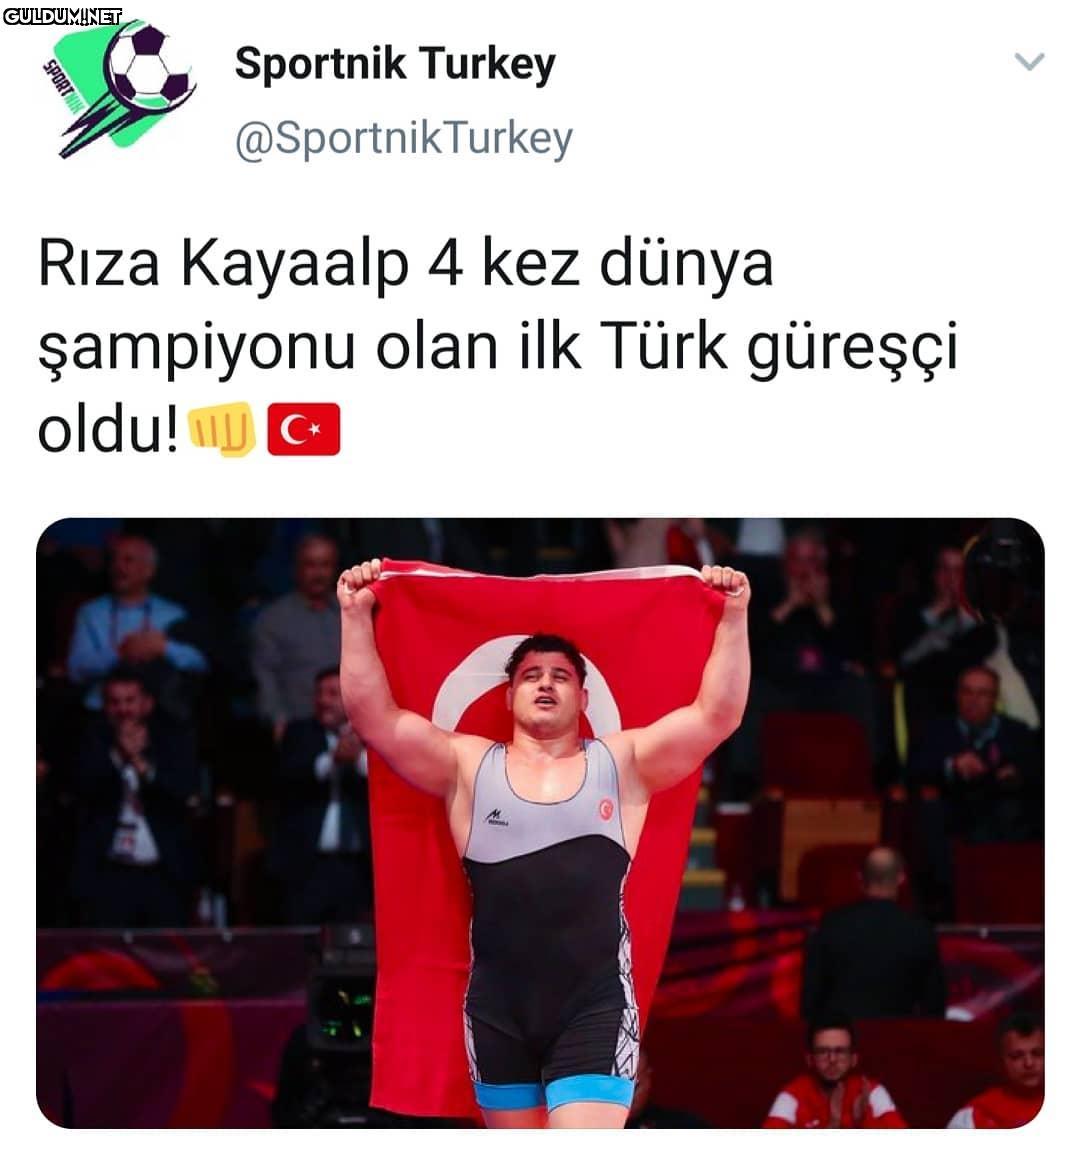 Sportnik Turkey...